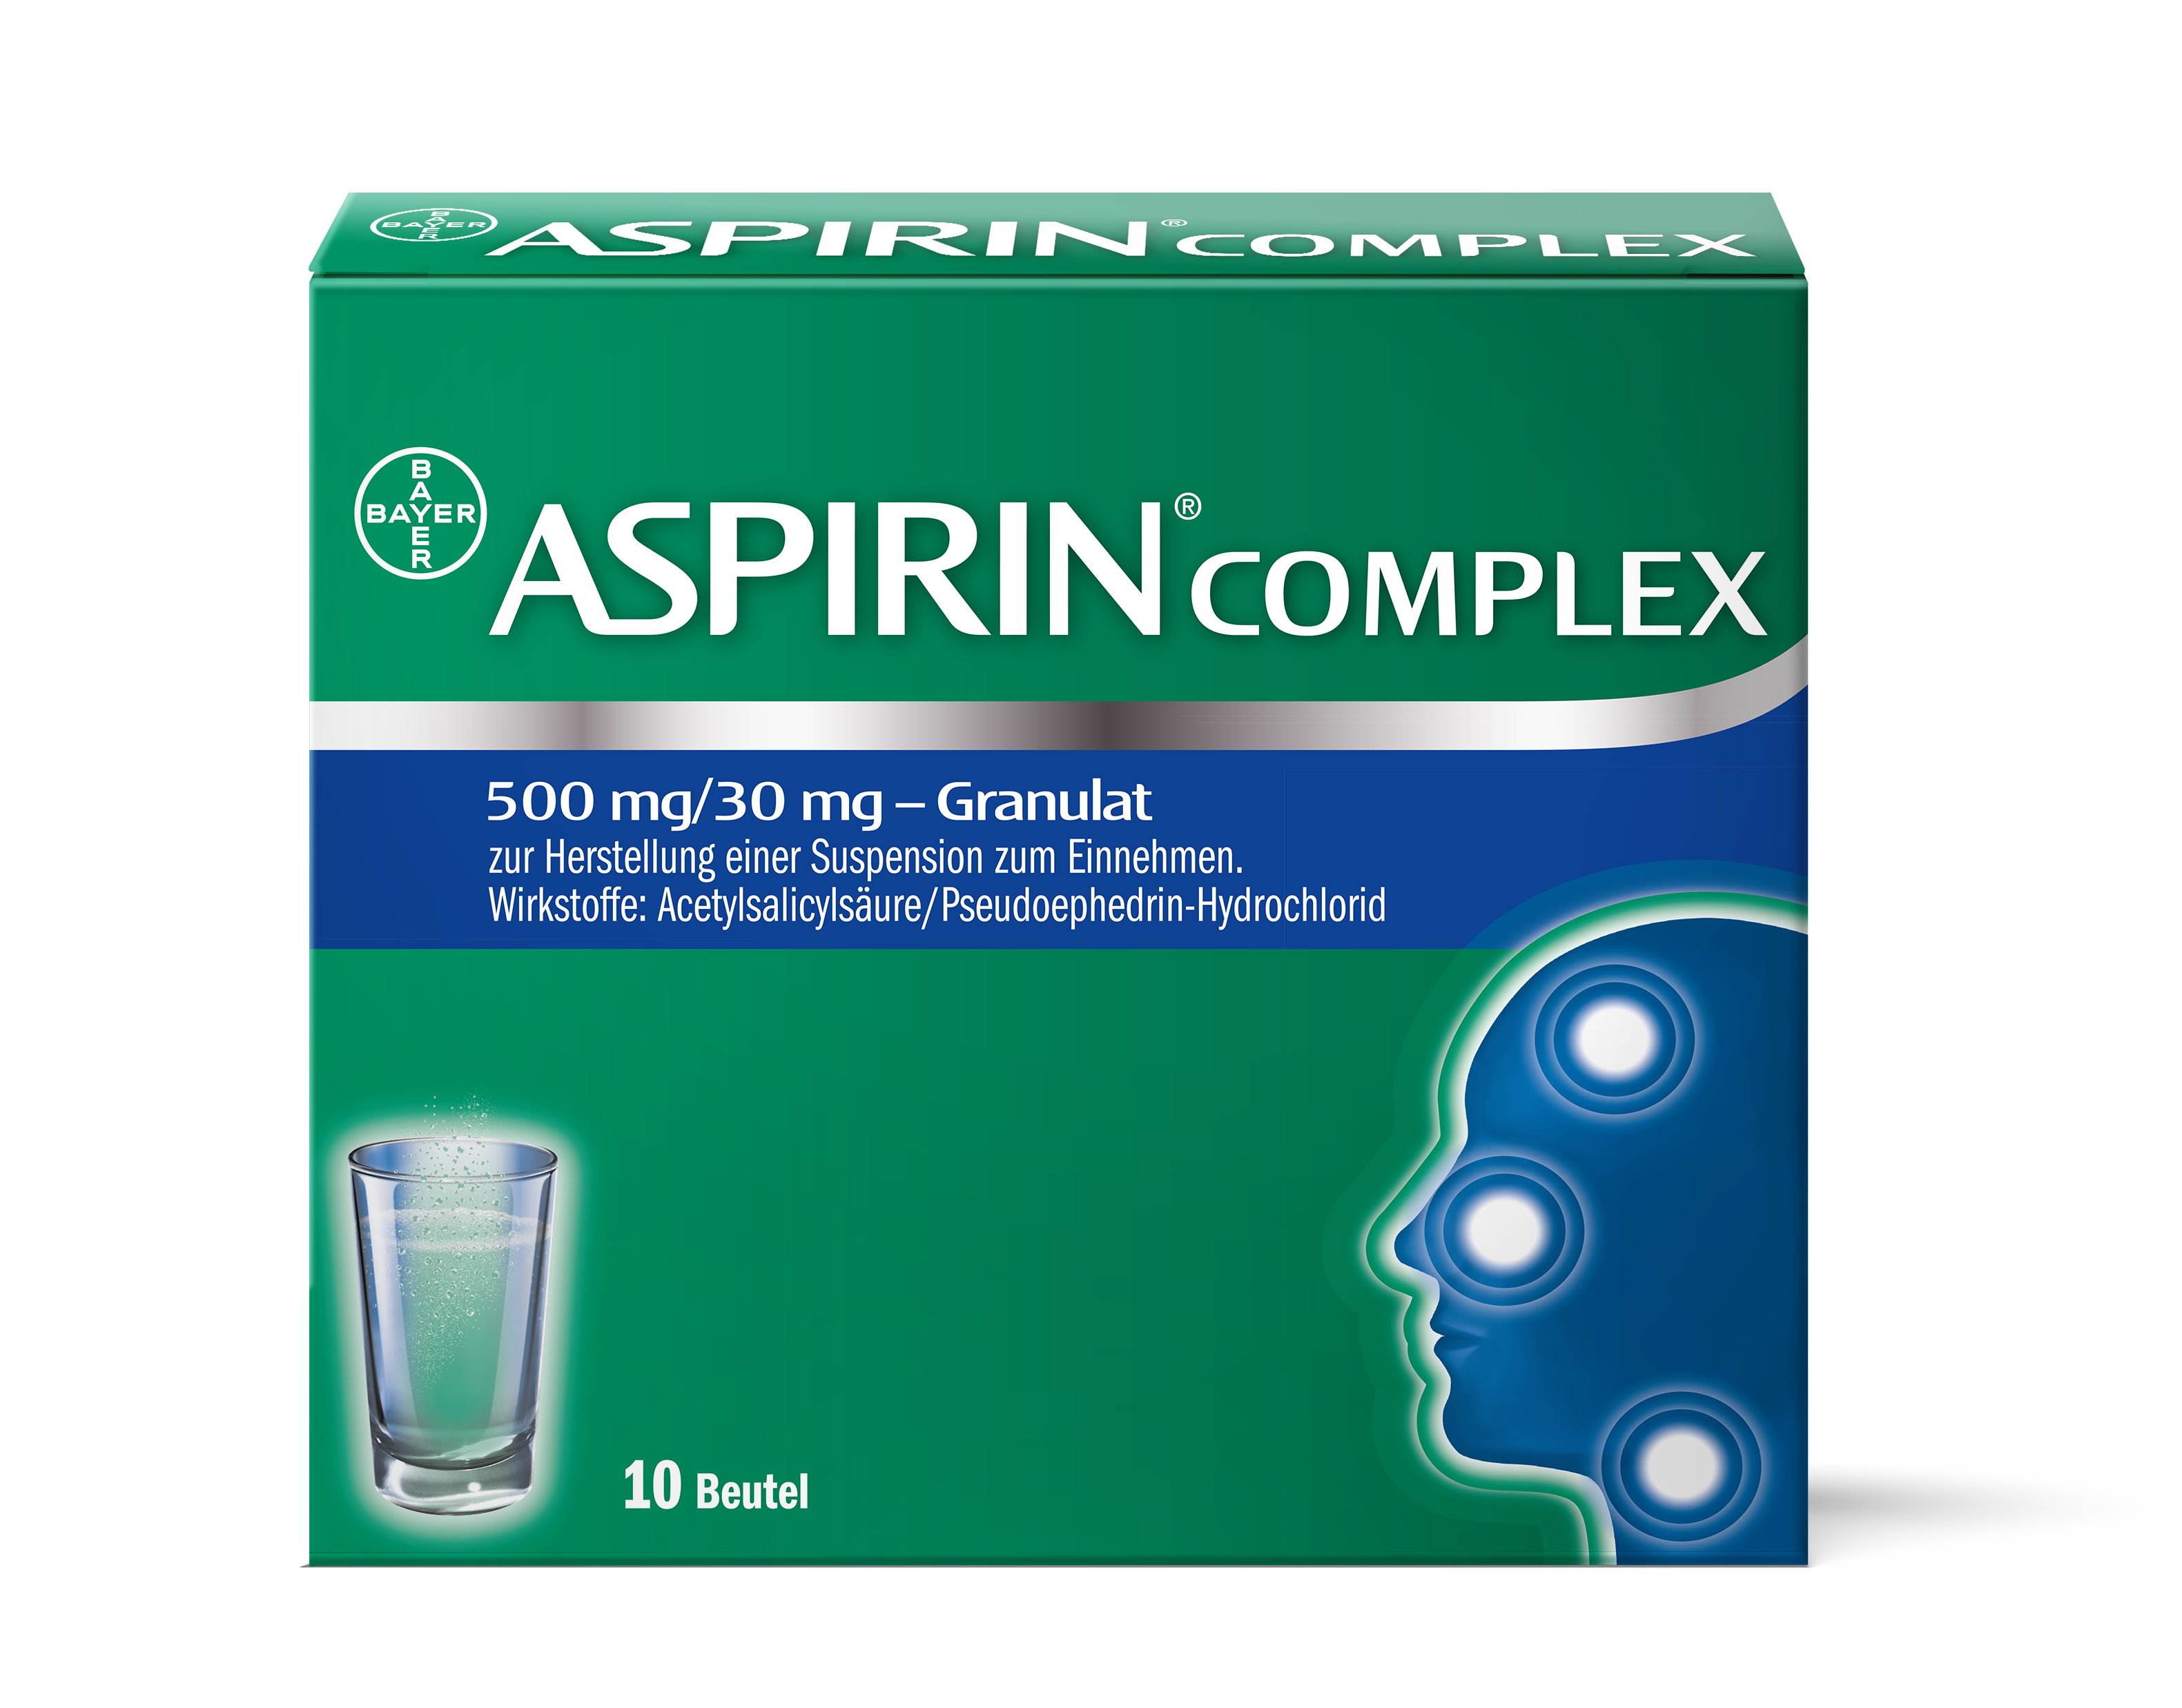 Aspirin Complex 500 mg/30 mg - Granulat zur Herstellung einer Suspension zum Einnehmen